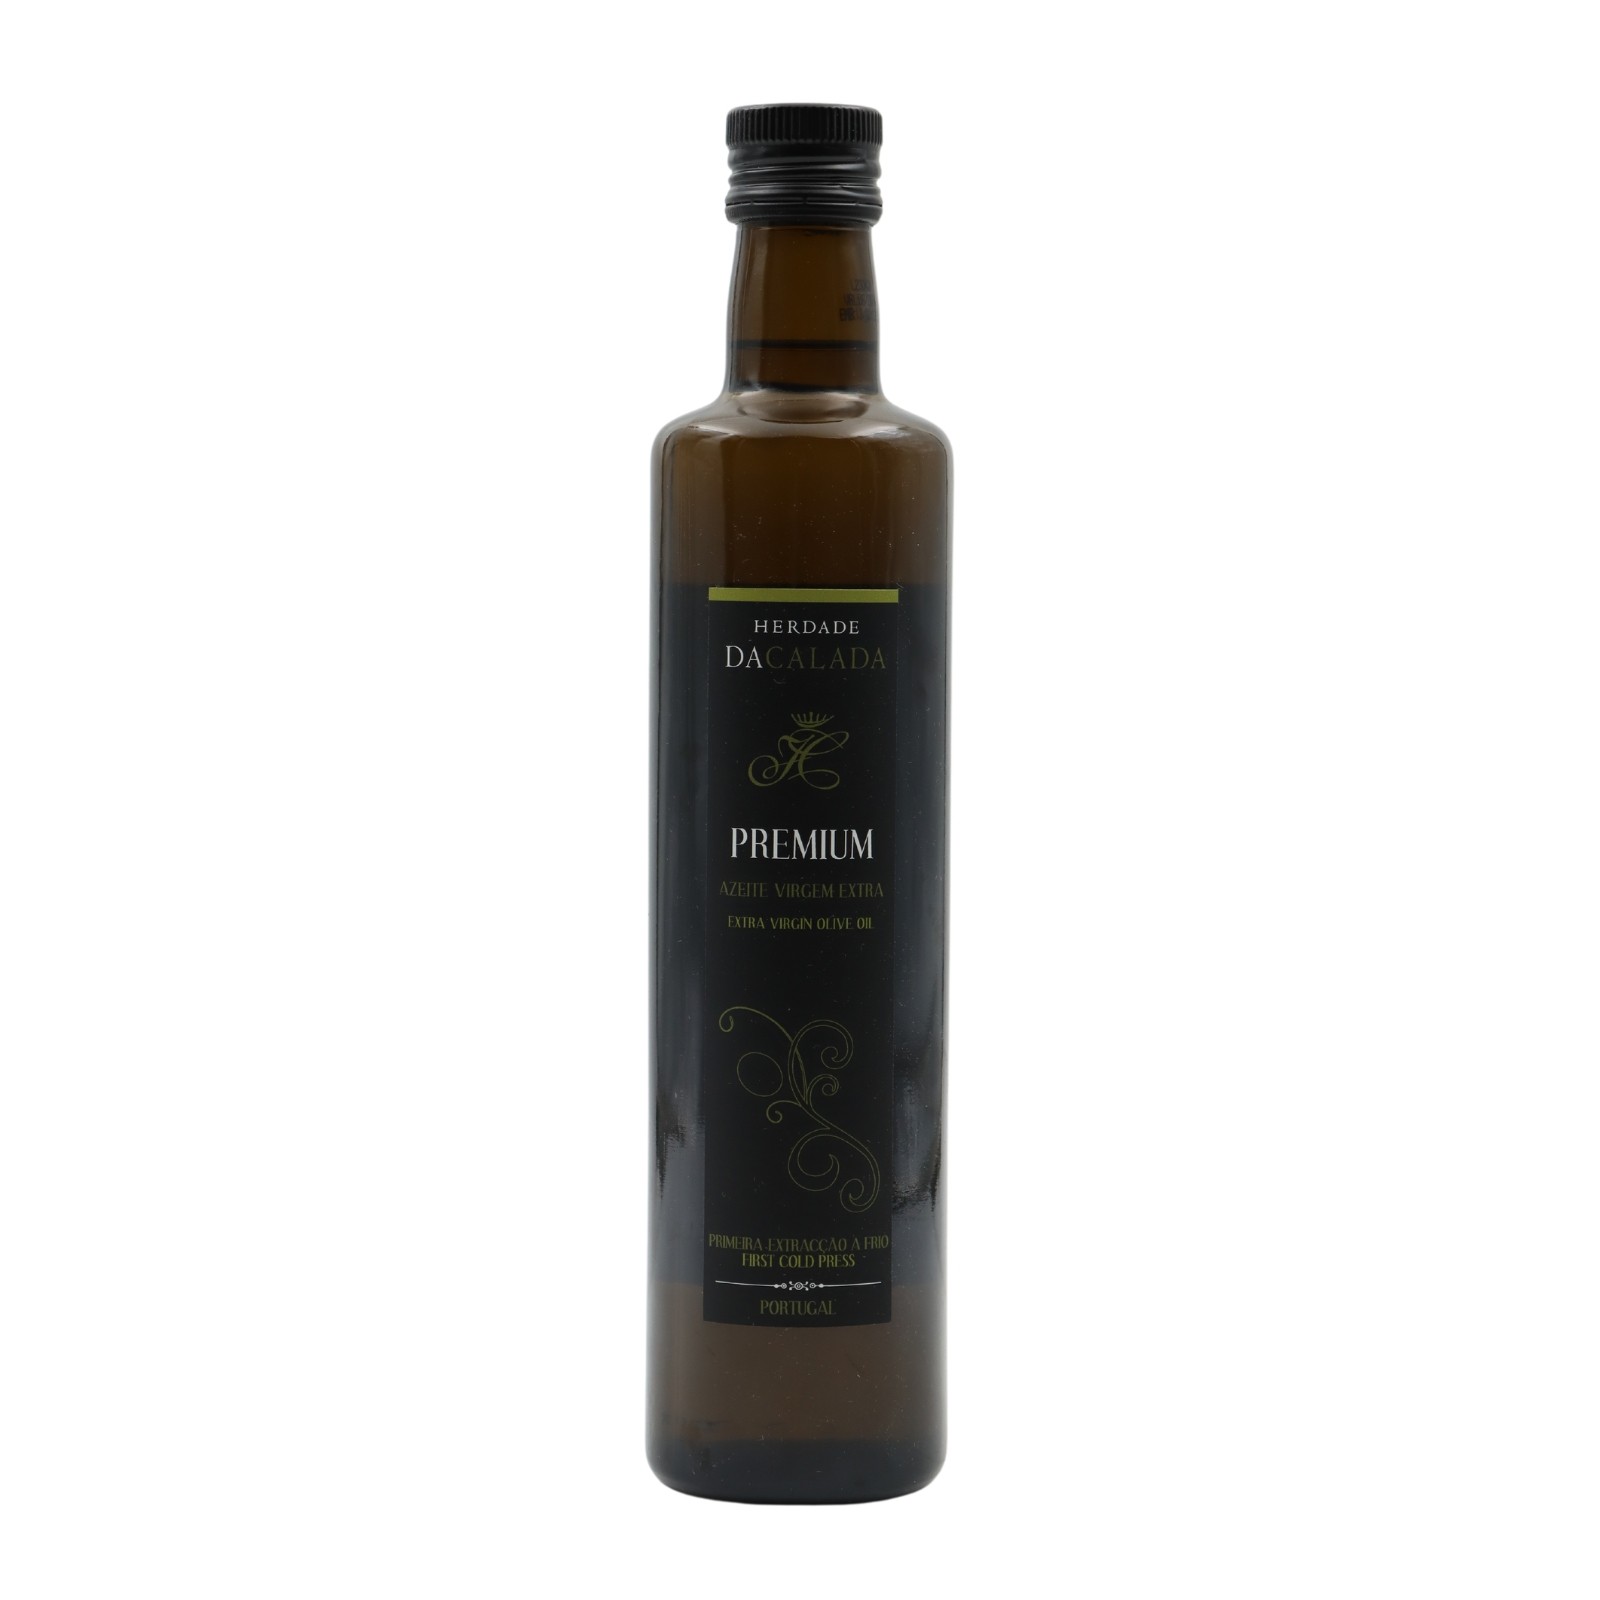 Herdade da Calada Premium Extra Virgin Olive Oil